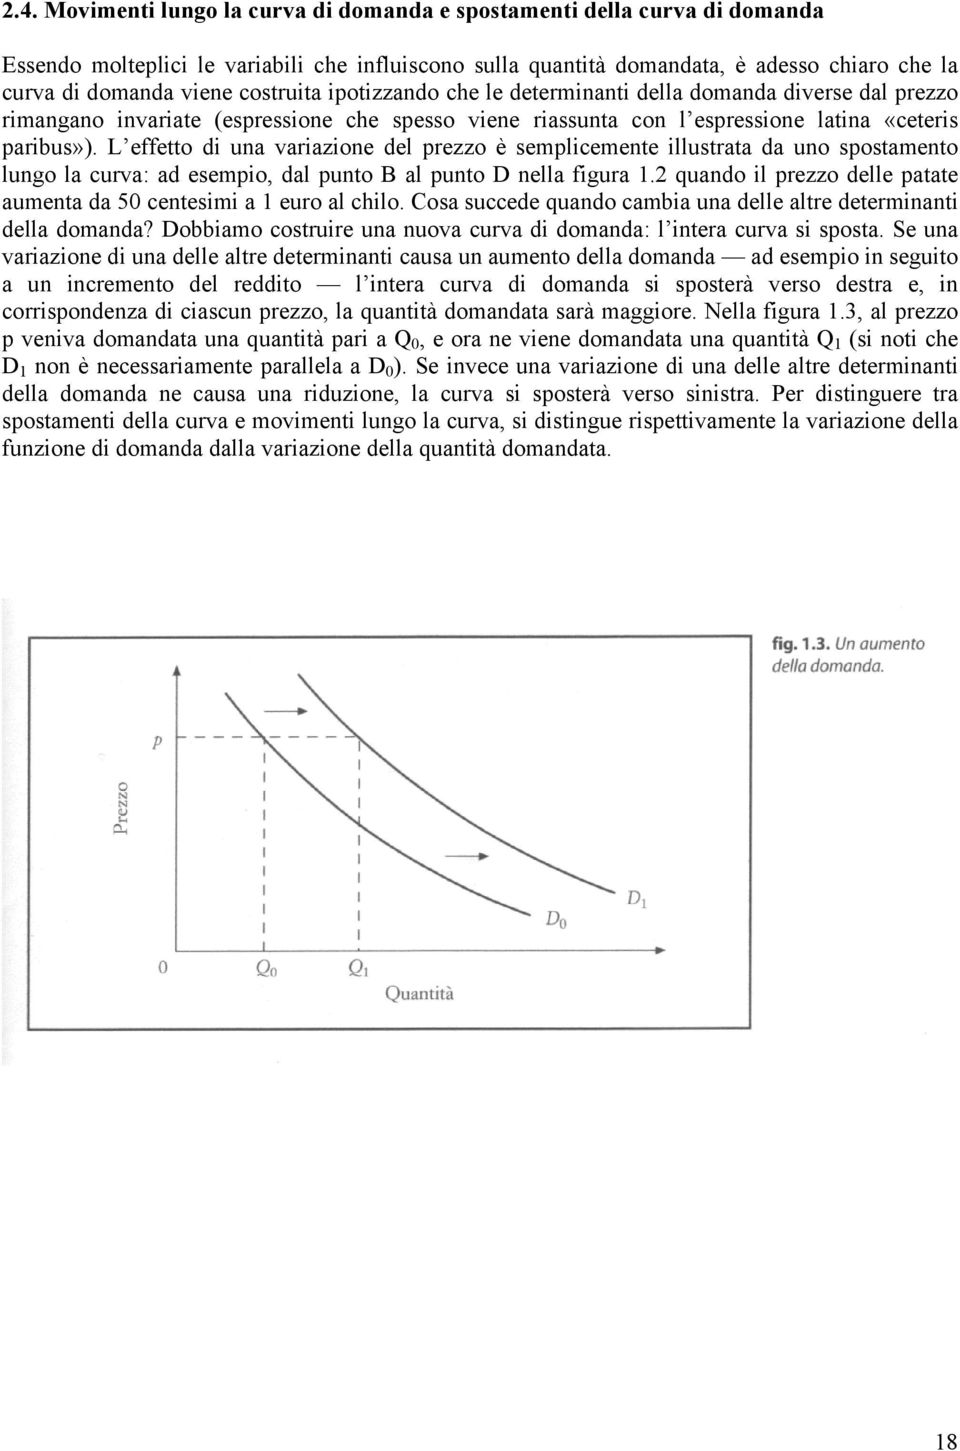 L effetto di una variazione del prezzo è semplicemente illustrata da uno spostamento lungo la curva: ad esempio, dal punto B al punto D nella figura 1.